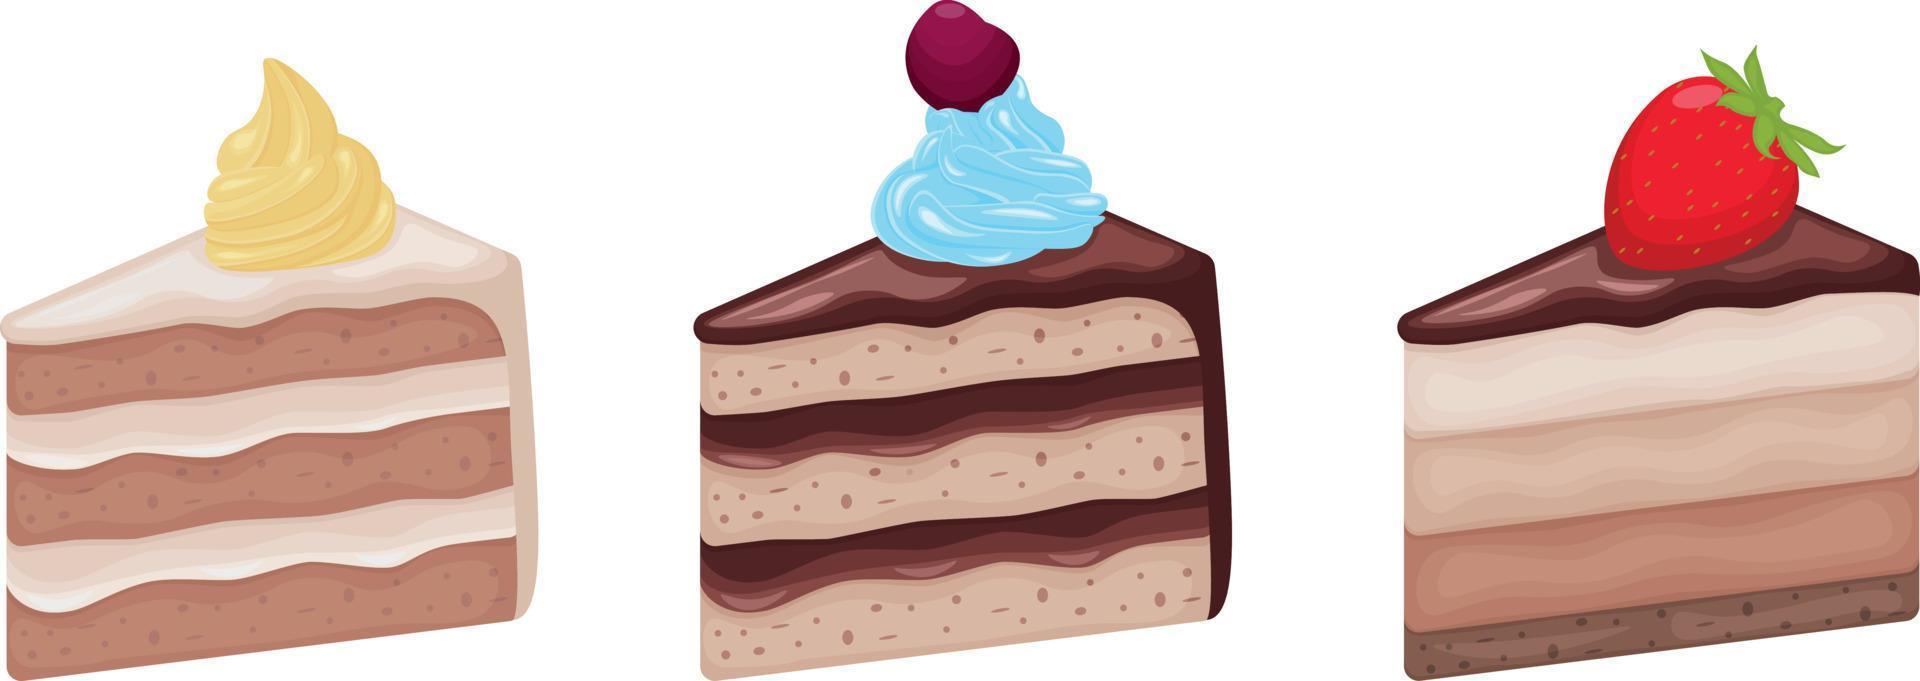 tortas un conjunto de diferentes pasteles de forma triangular. pasteles decorados con varias cremas y bayas. una colección de postres dulces. ilustración vectorial vector